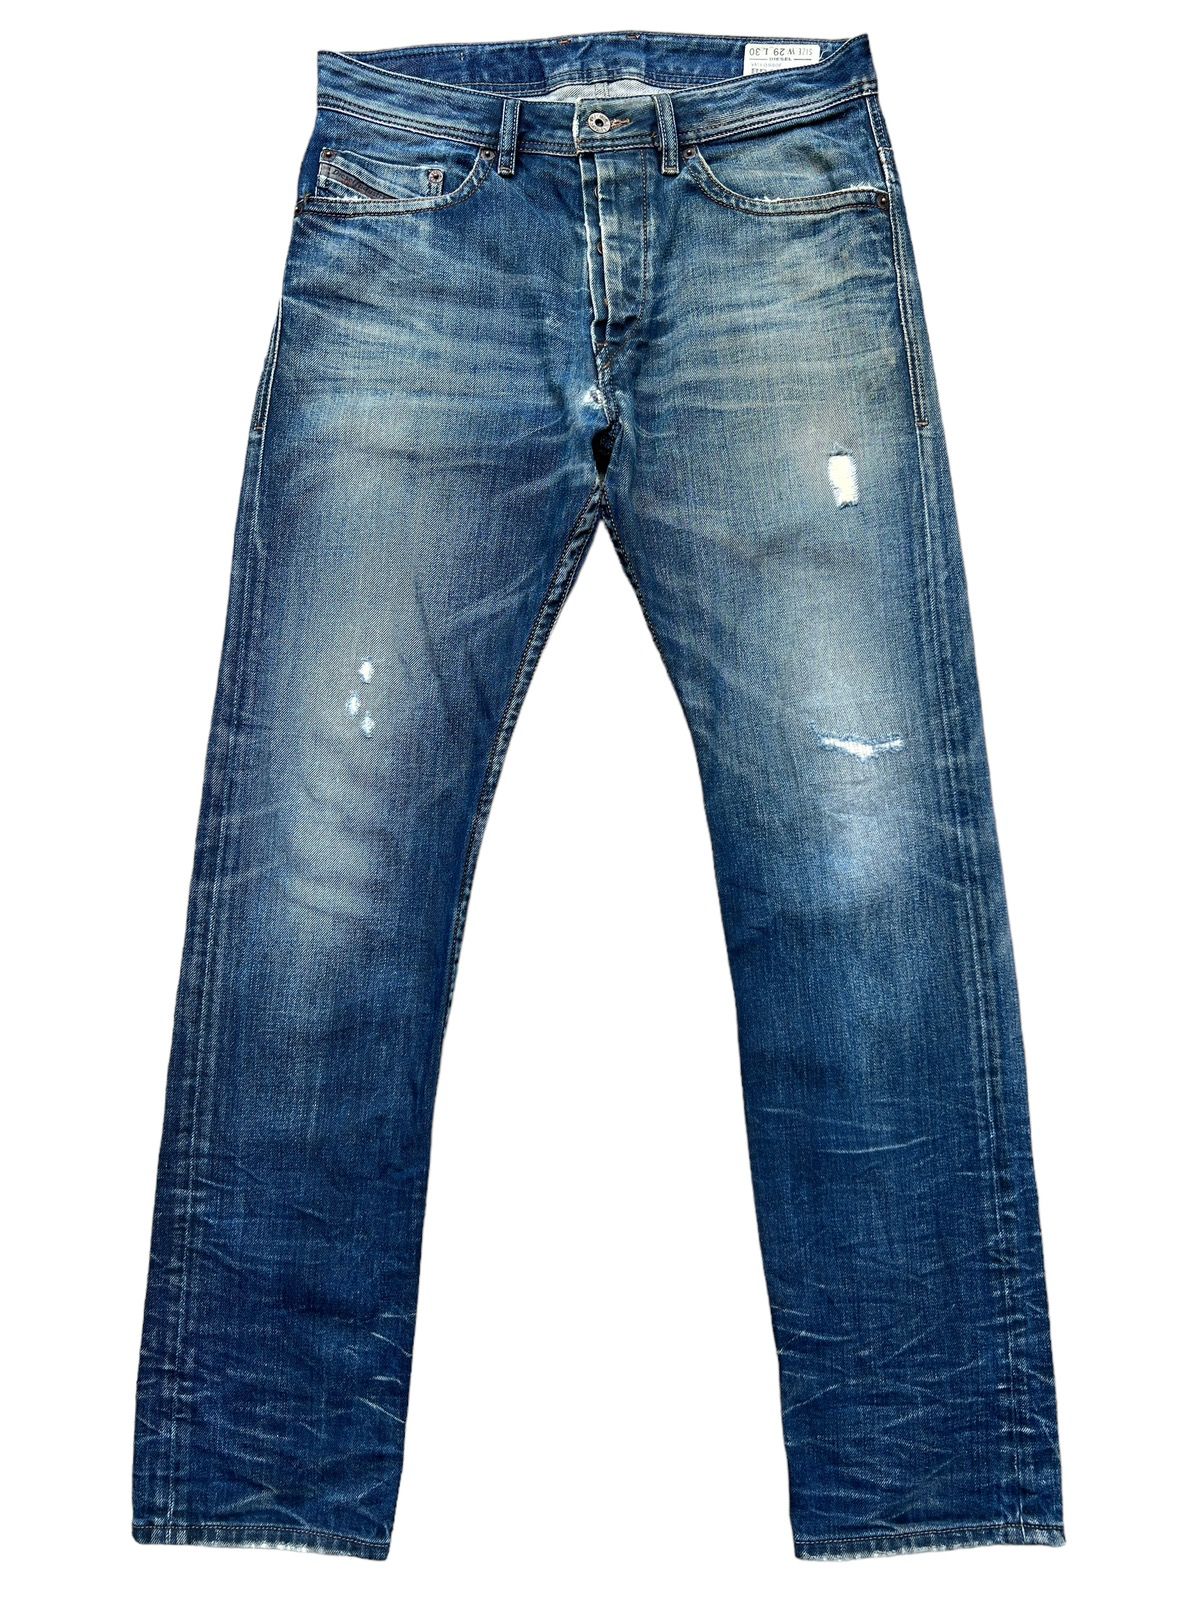 Vintage Diesel Industry Distressed Denim Jeans 32x31 - 2